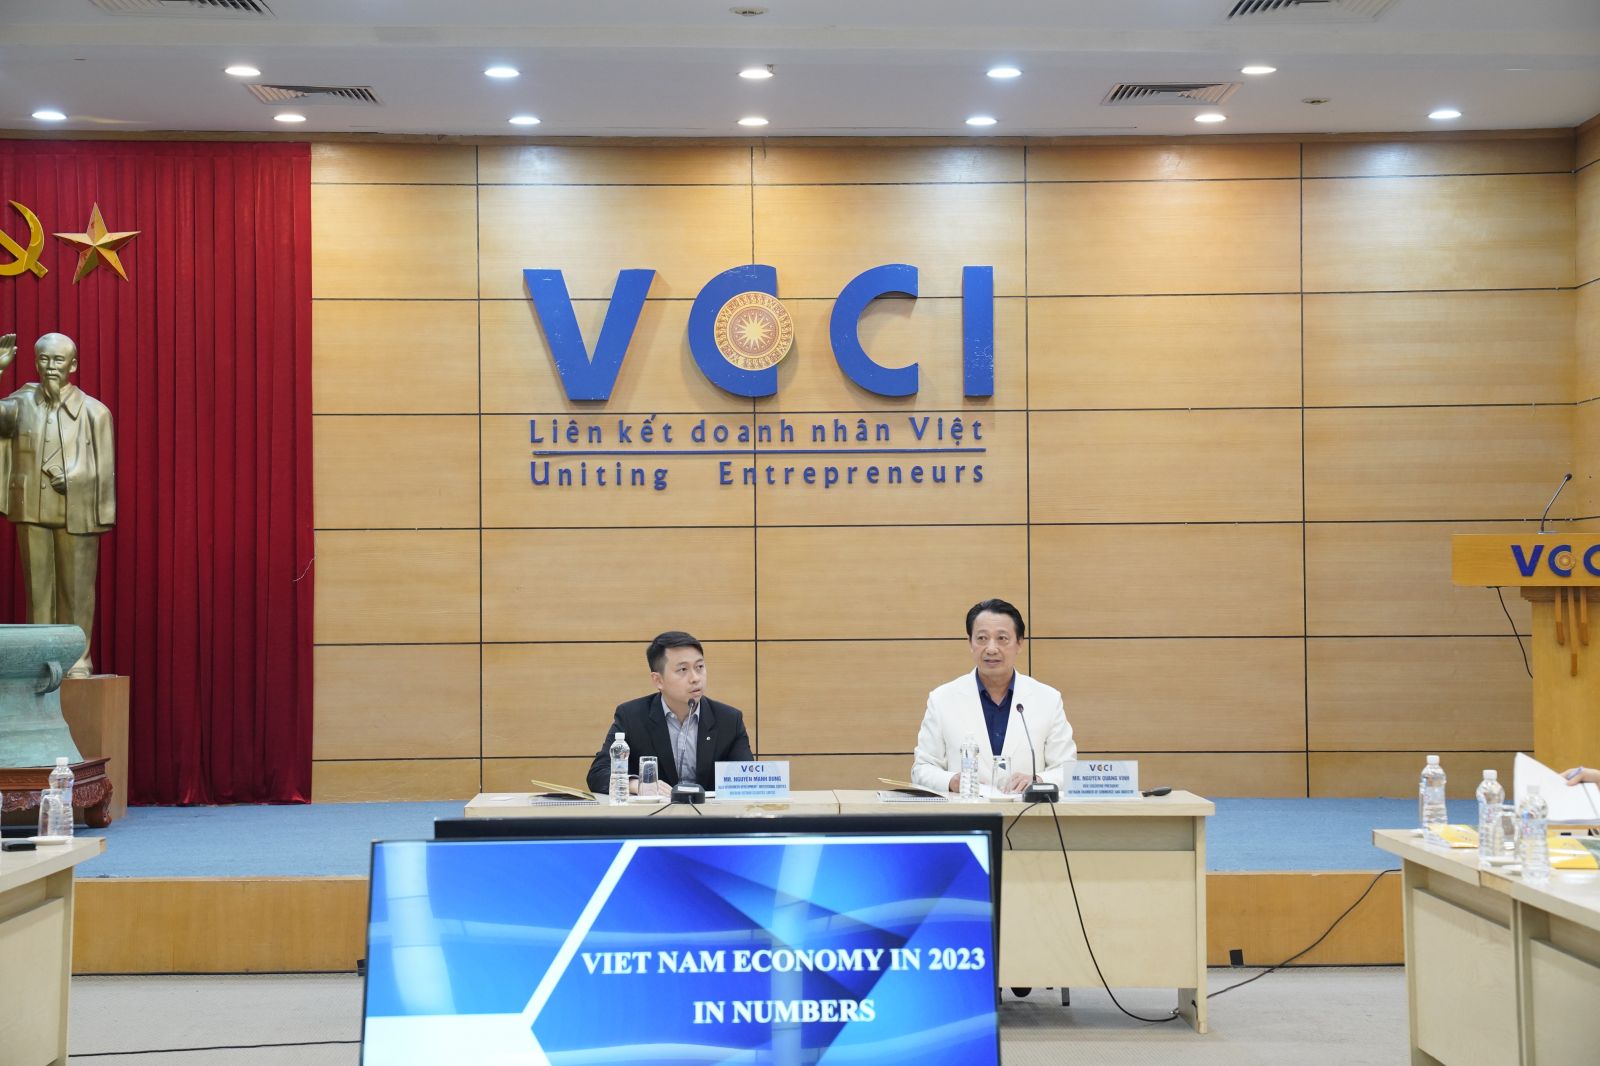 Trong buổi gặp, Phó chủ tịch Nguyễn Quang Vinh đã trả lời một số câu hỏi từ các nhà đầu tư nước ngoài